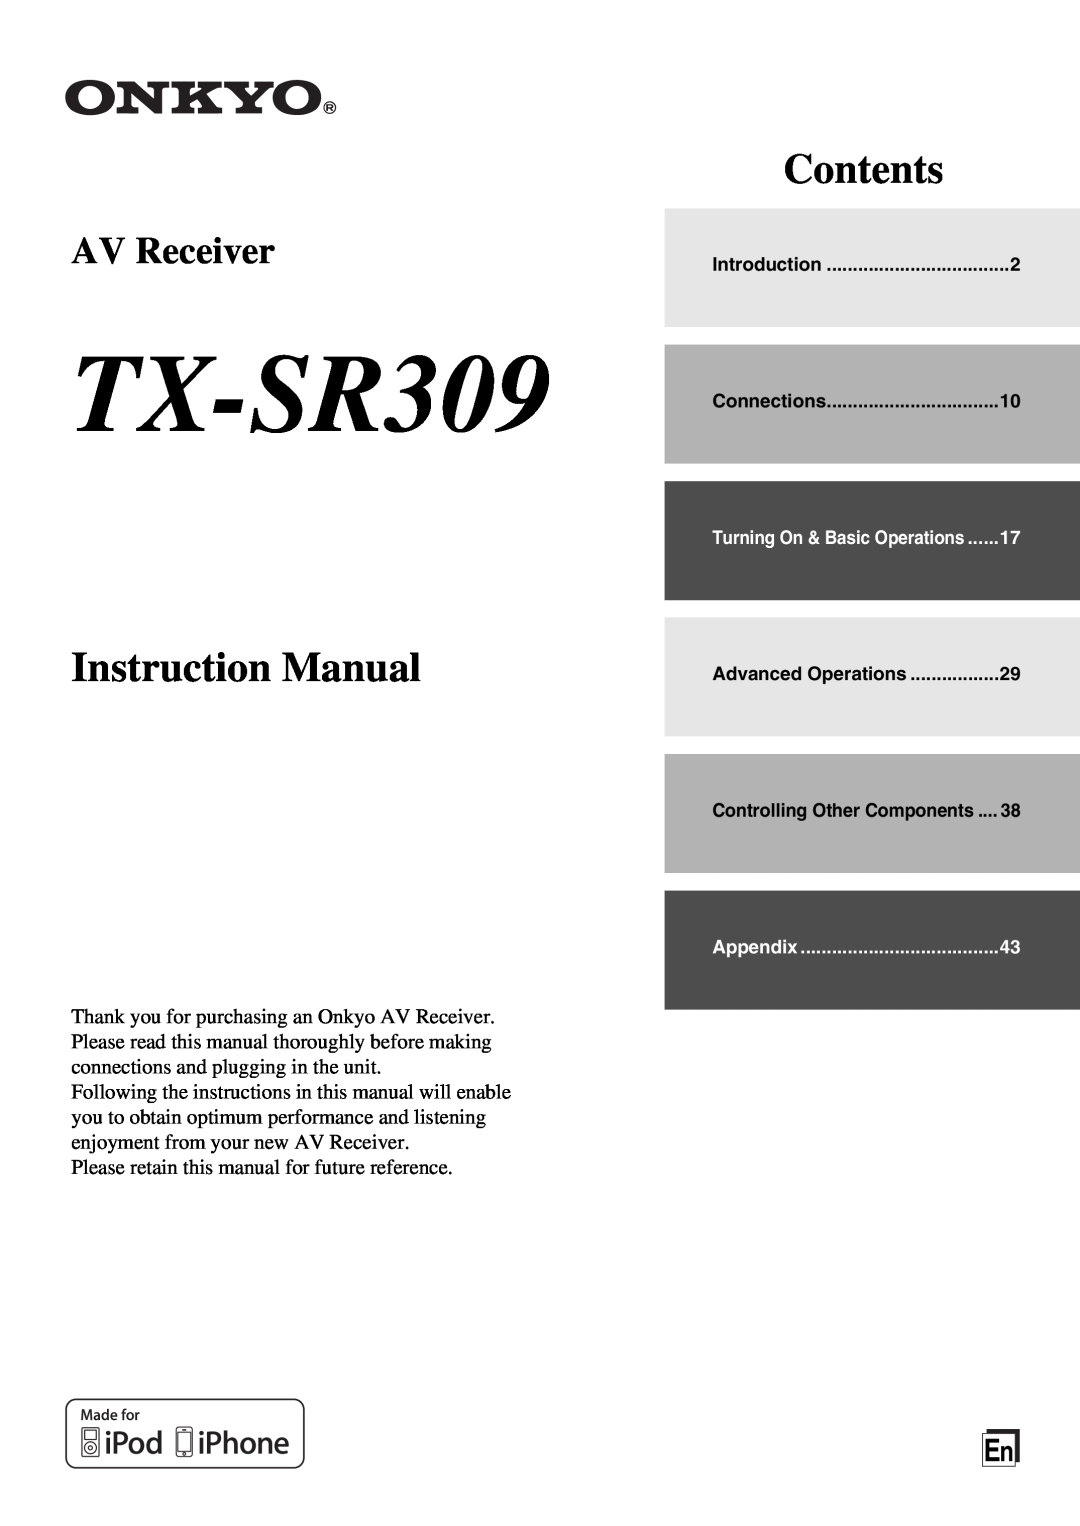 Onkyo TX-SR309 instruction manual Contents, AV Receiver 